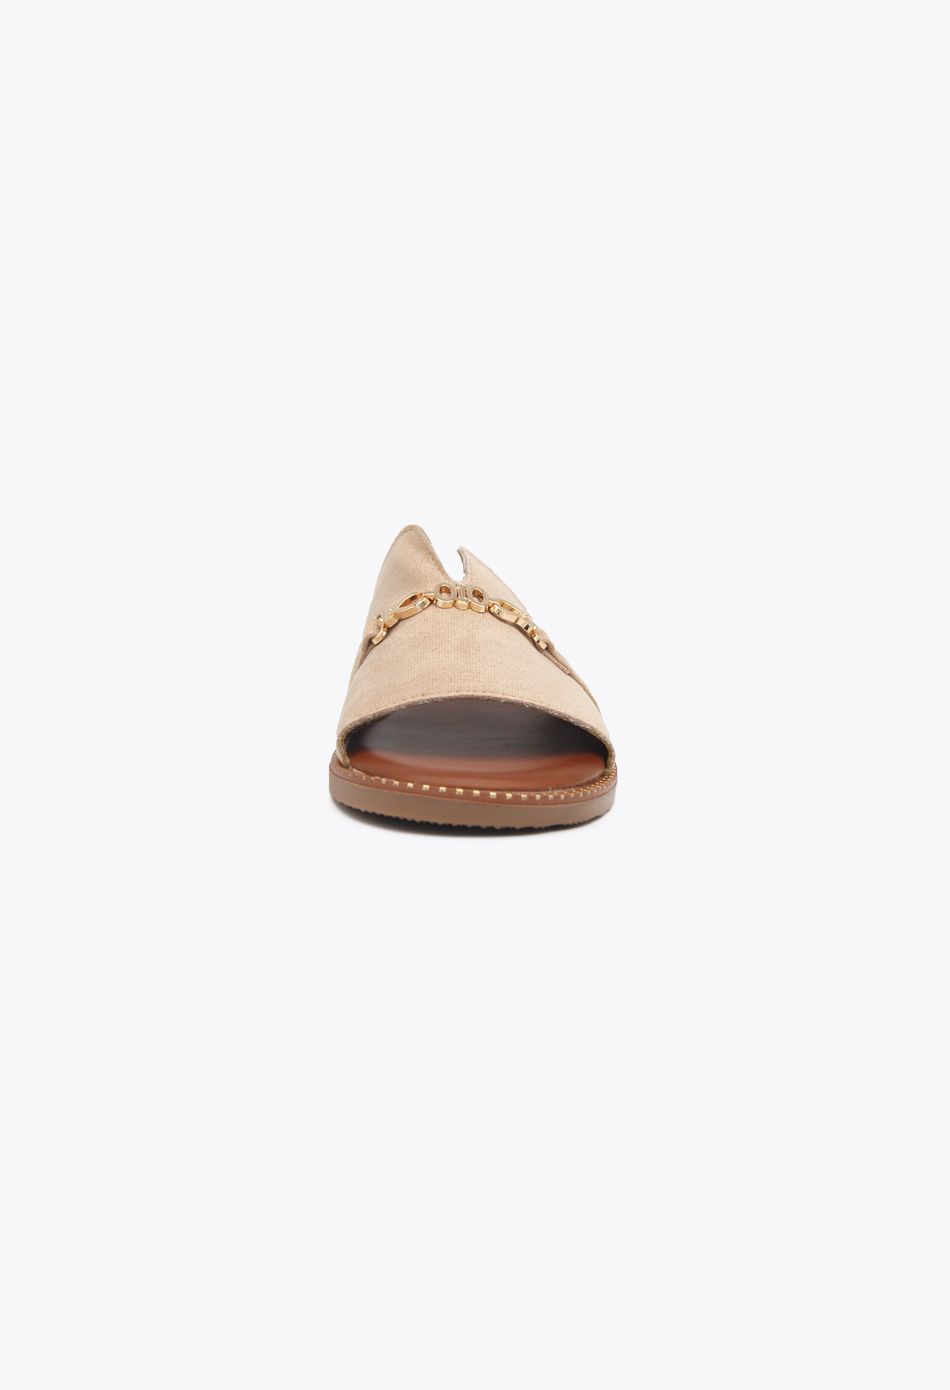 Σουέτ Flat Σανδάλια με Διακοσμητική Αλυσίδα Μπεζ / 188-beige Ανοιχτά Παπούτσια joya.gr